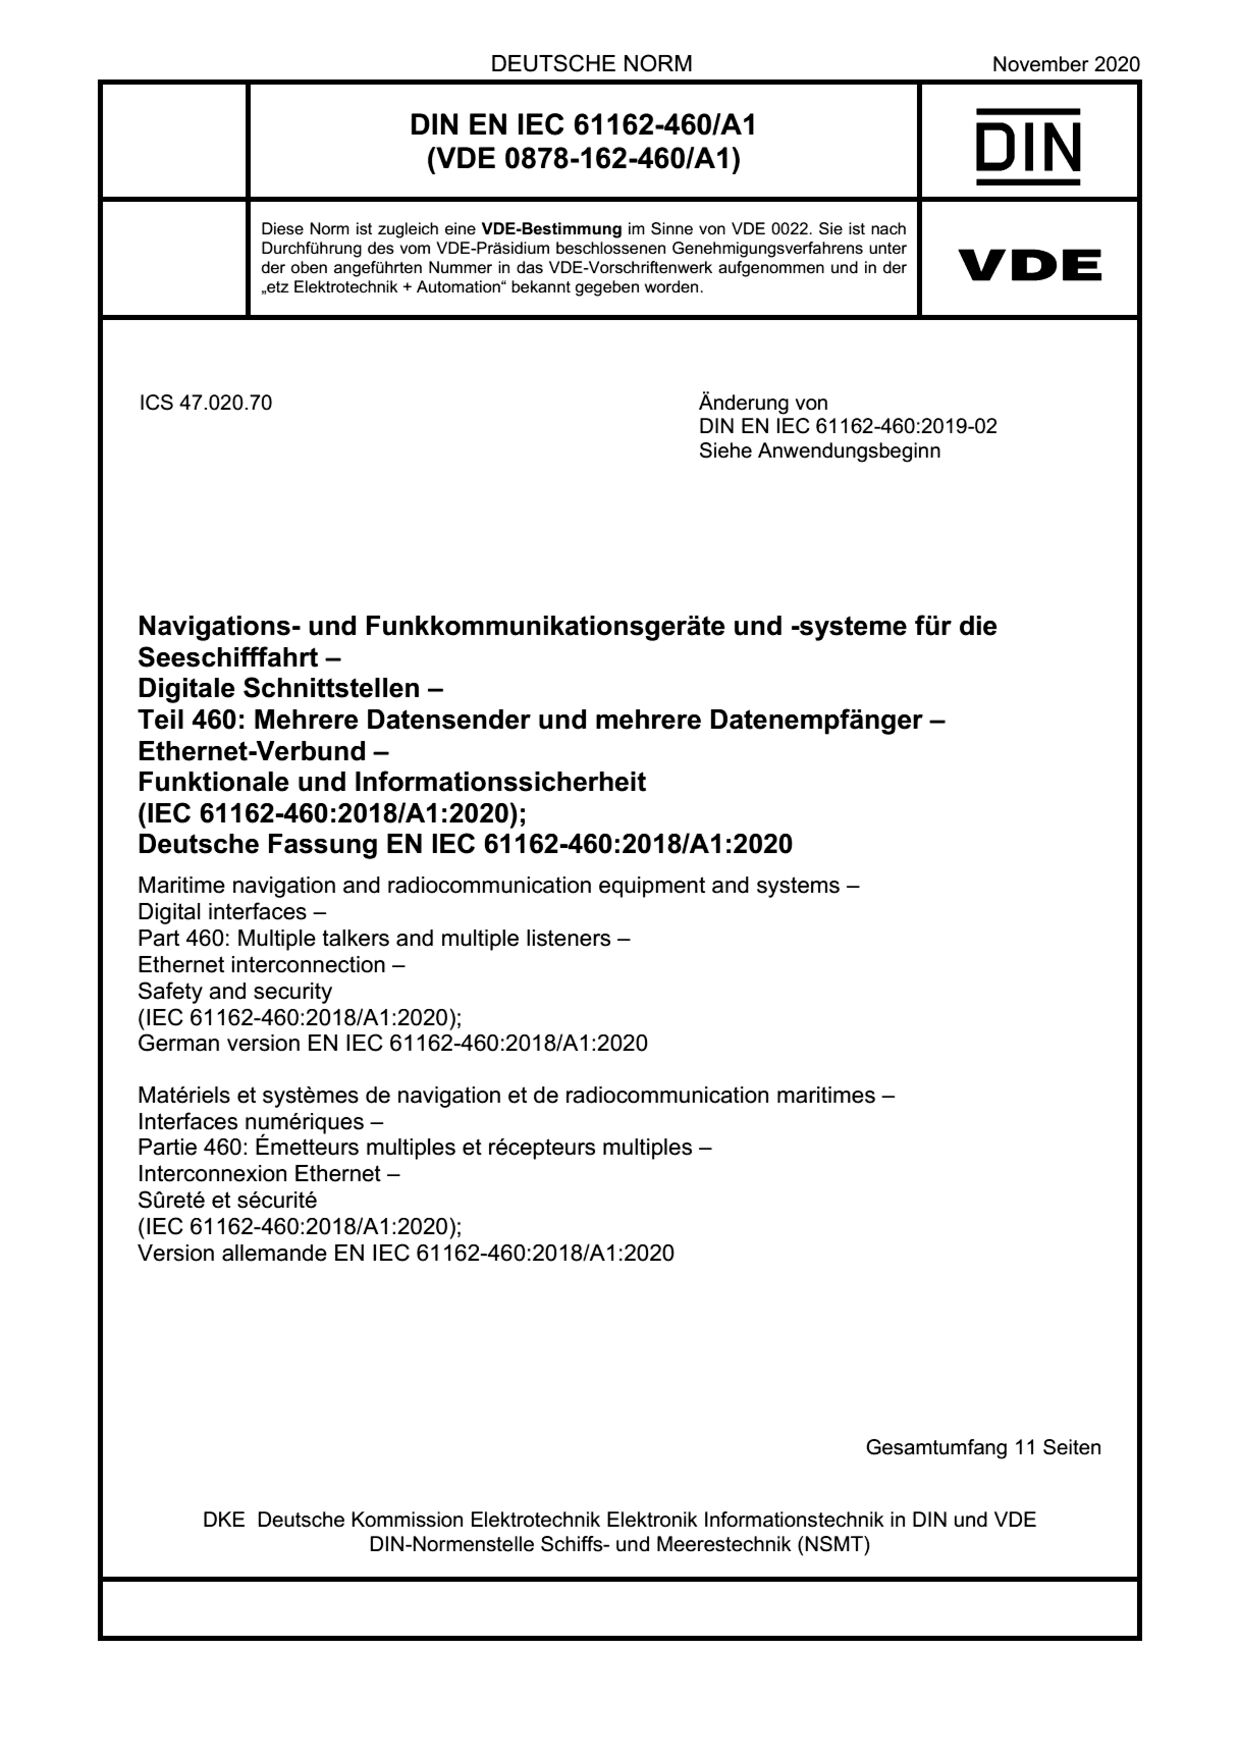 DIN EN IEC 61162-460/A1:2020封面图